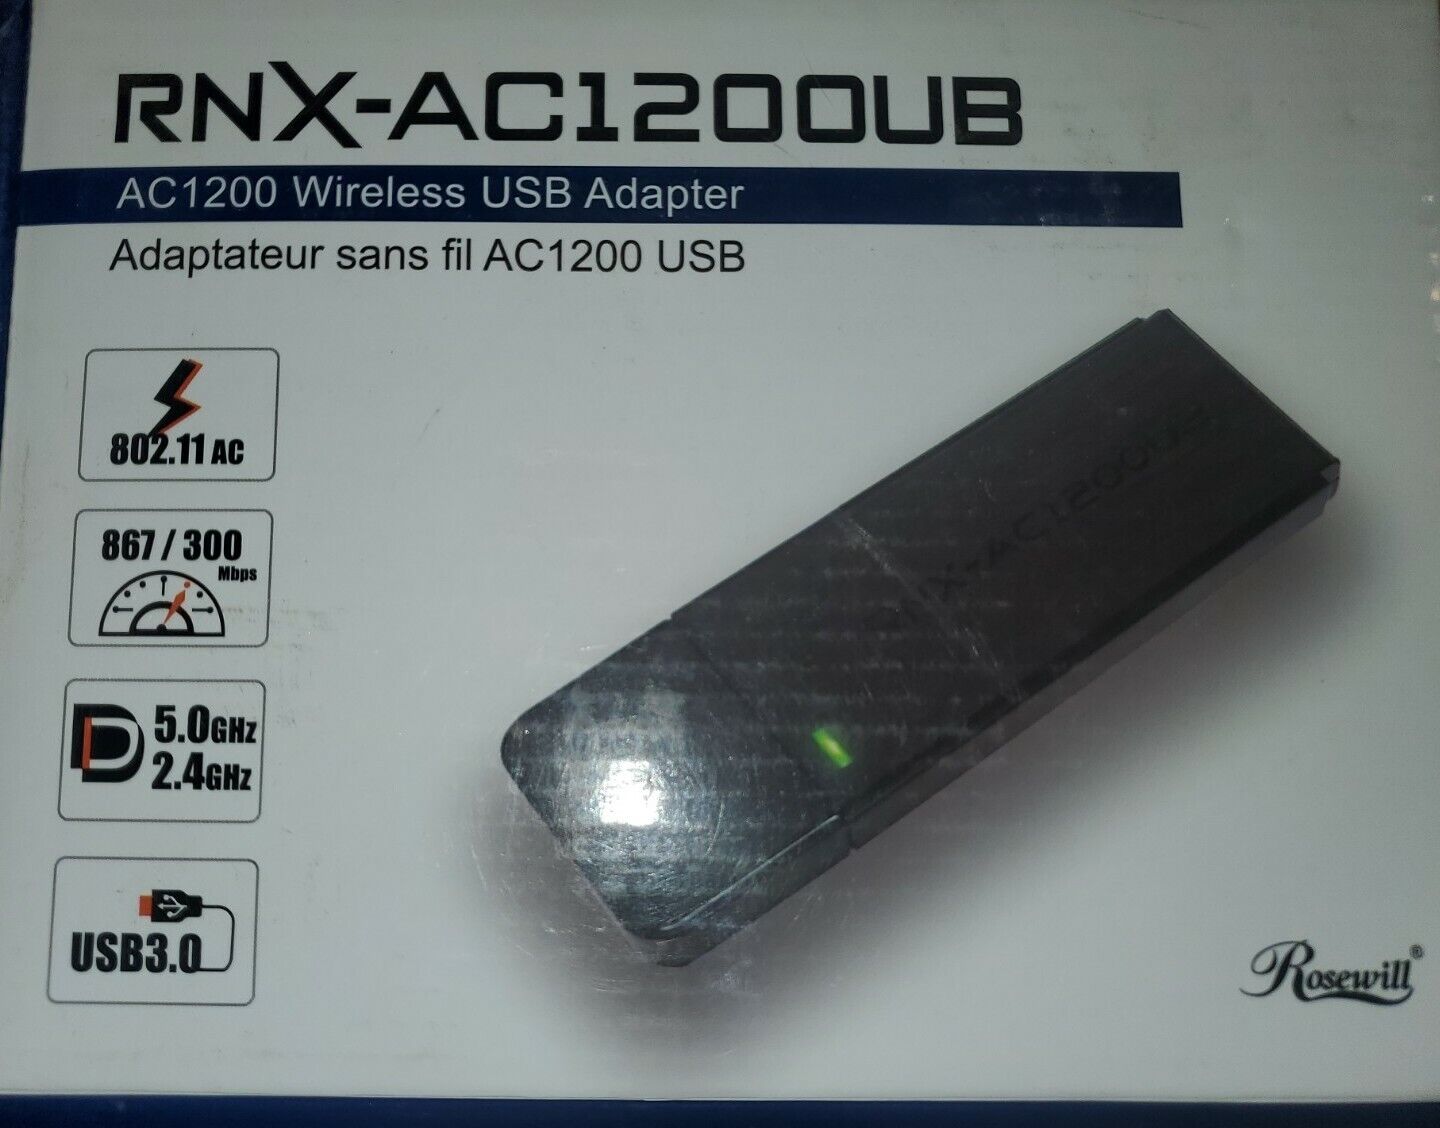 USB 3.0 Adapter AC1200 Wireless- 802.11AC - Rosewill RNX-AC1200UB 802.11a/b/g/n